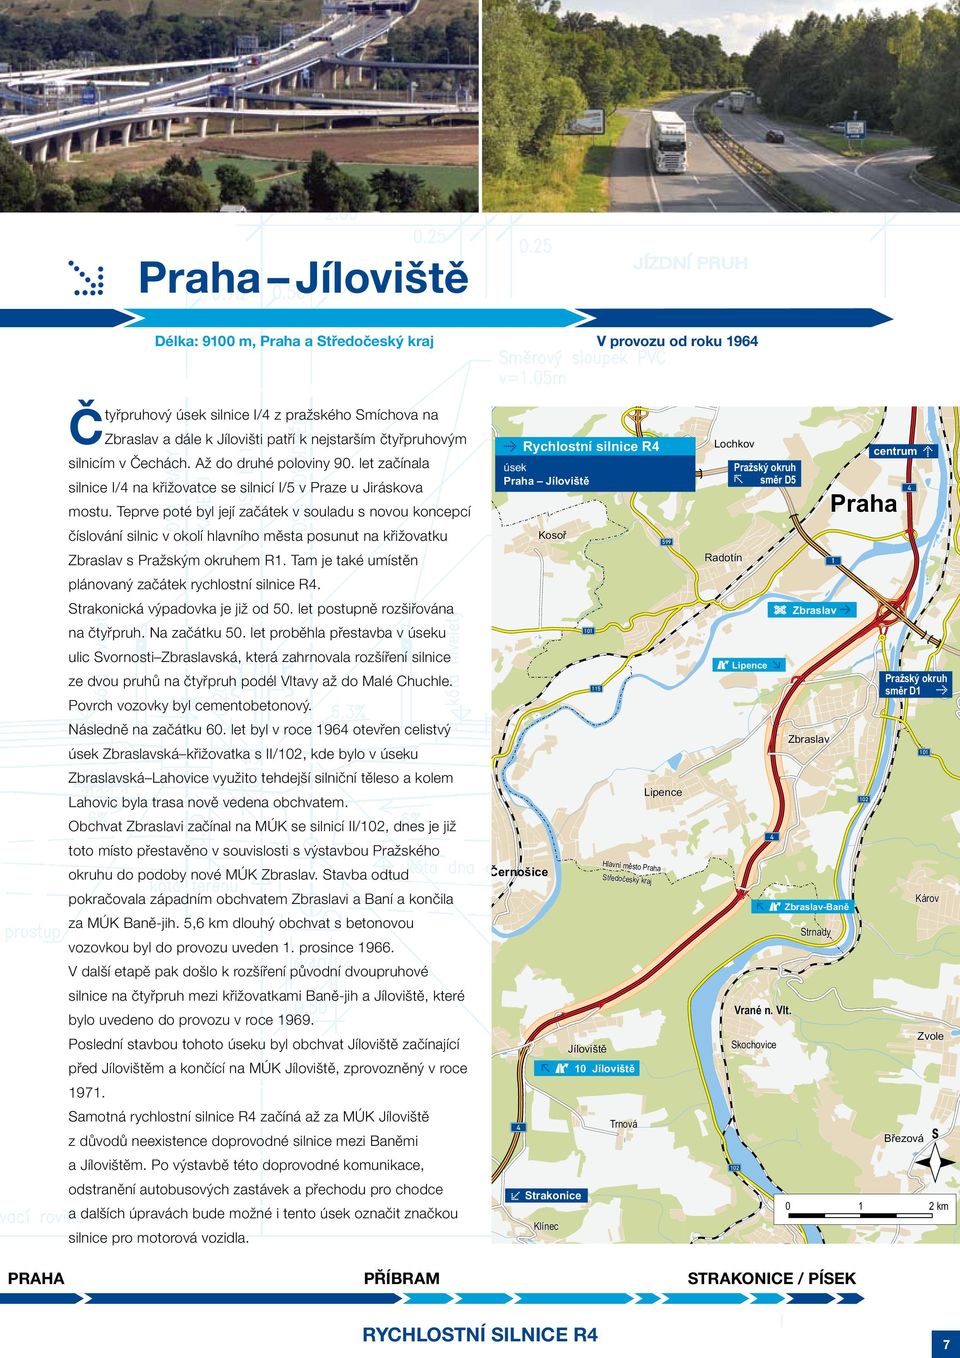 Teprve poté byl její začátek v souladu s novou koncepcí číslování silnic v okolí hlavního města posunut na křižovatku Zbraslav s Pražským okruhem R1.